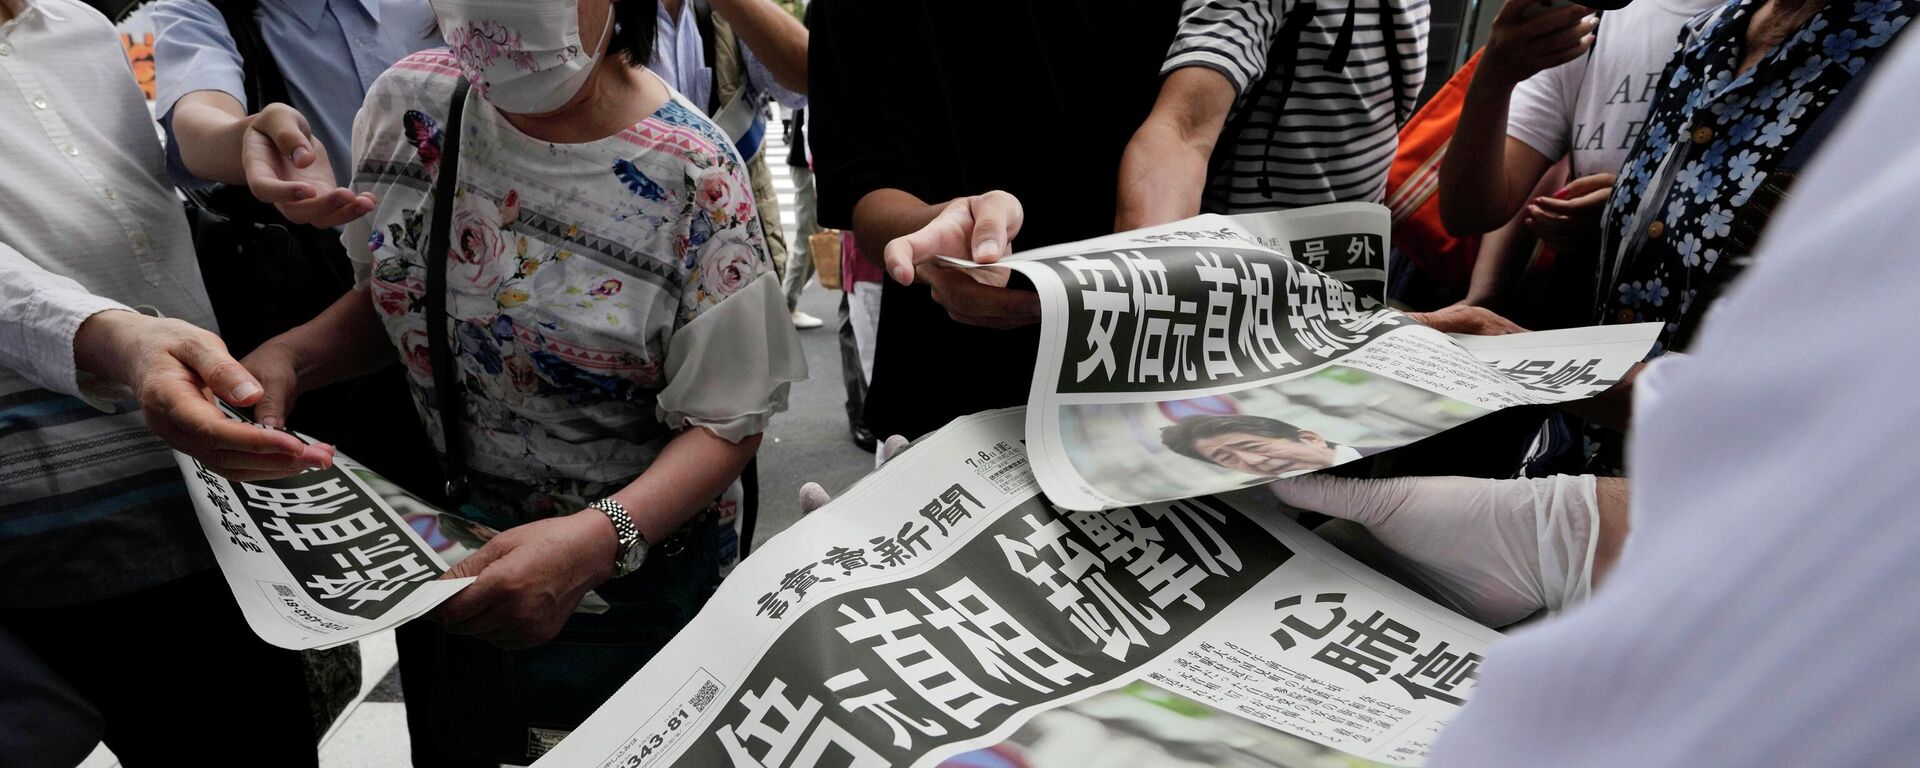 Một nhân viên phân phát phụ bản báo Yomiuri Shimbun tường thuật vụ ám sát cựu Thủ tướng Nhật Bản Shinzo Abe ngày 8 tháng 7 năm 2022 tại Tokyo - Sputnik Việt Nam, 1920, 08.07.2022